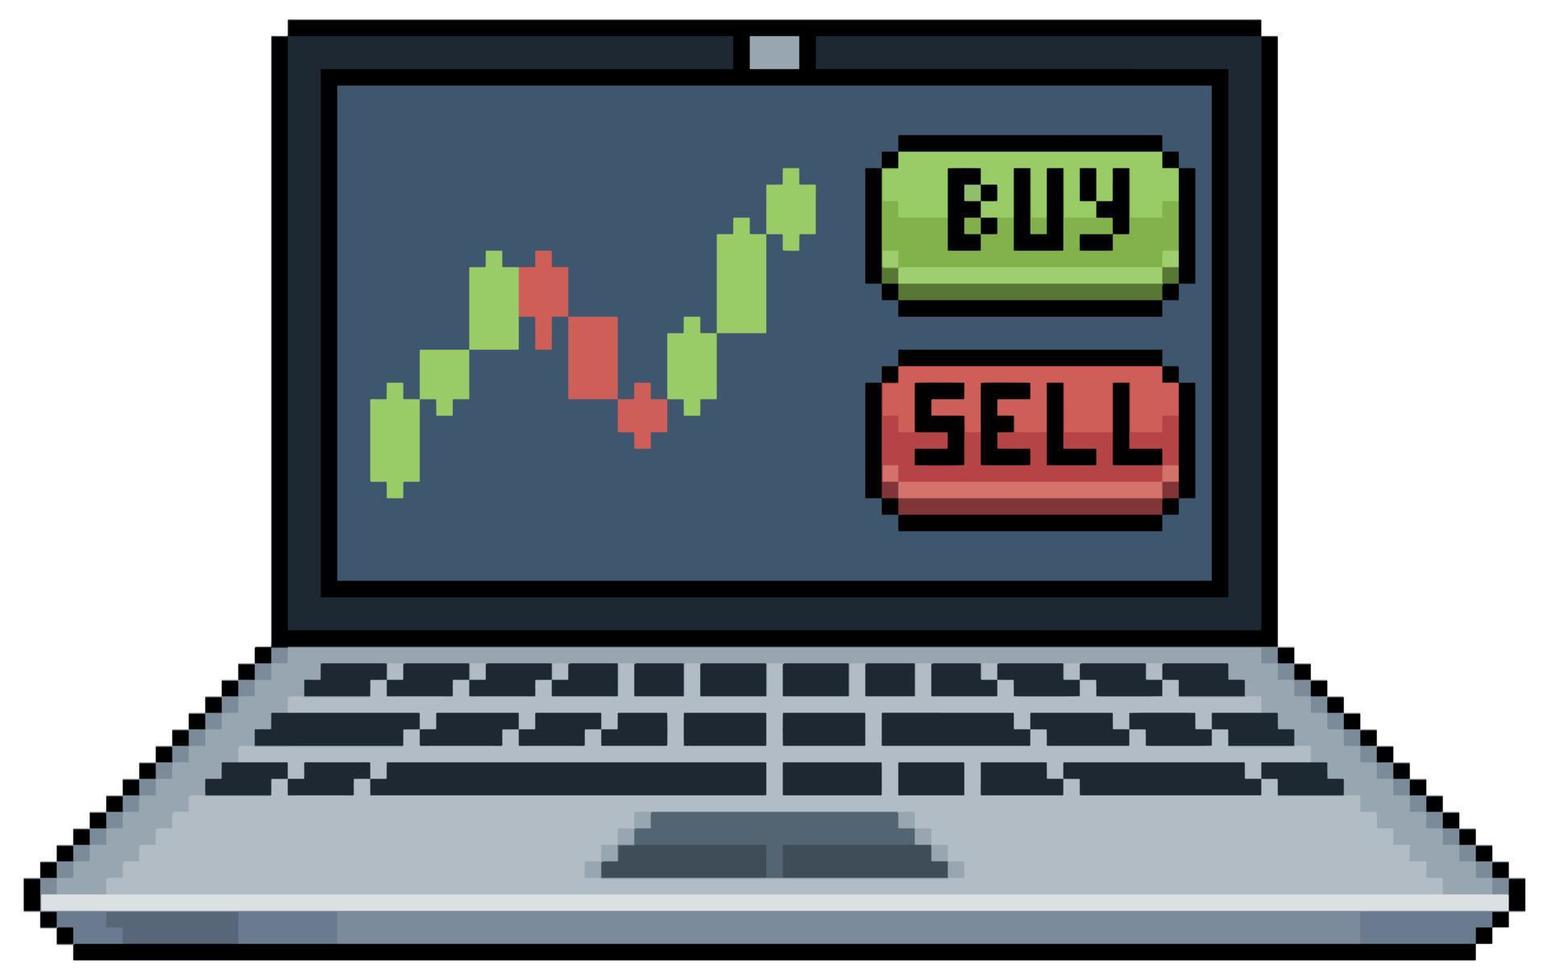 pixel art day trade sur ordinateur portable, icône vectorielle d'analyse des marchés financiers pour le jeu 8 bits sur fond blanc vecteur